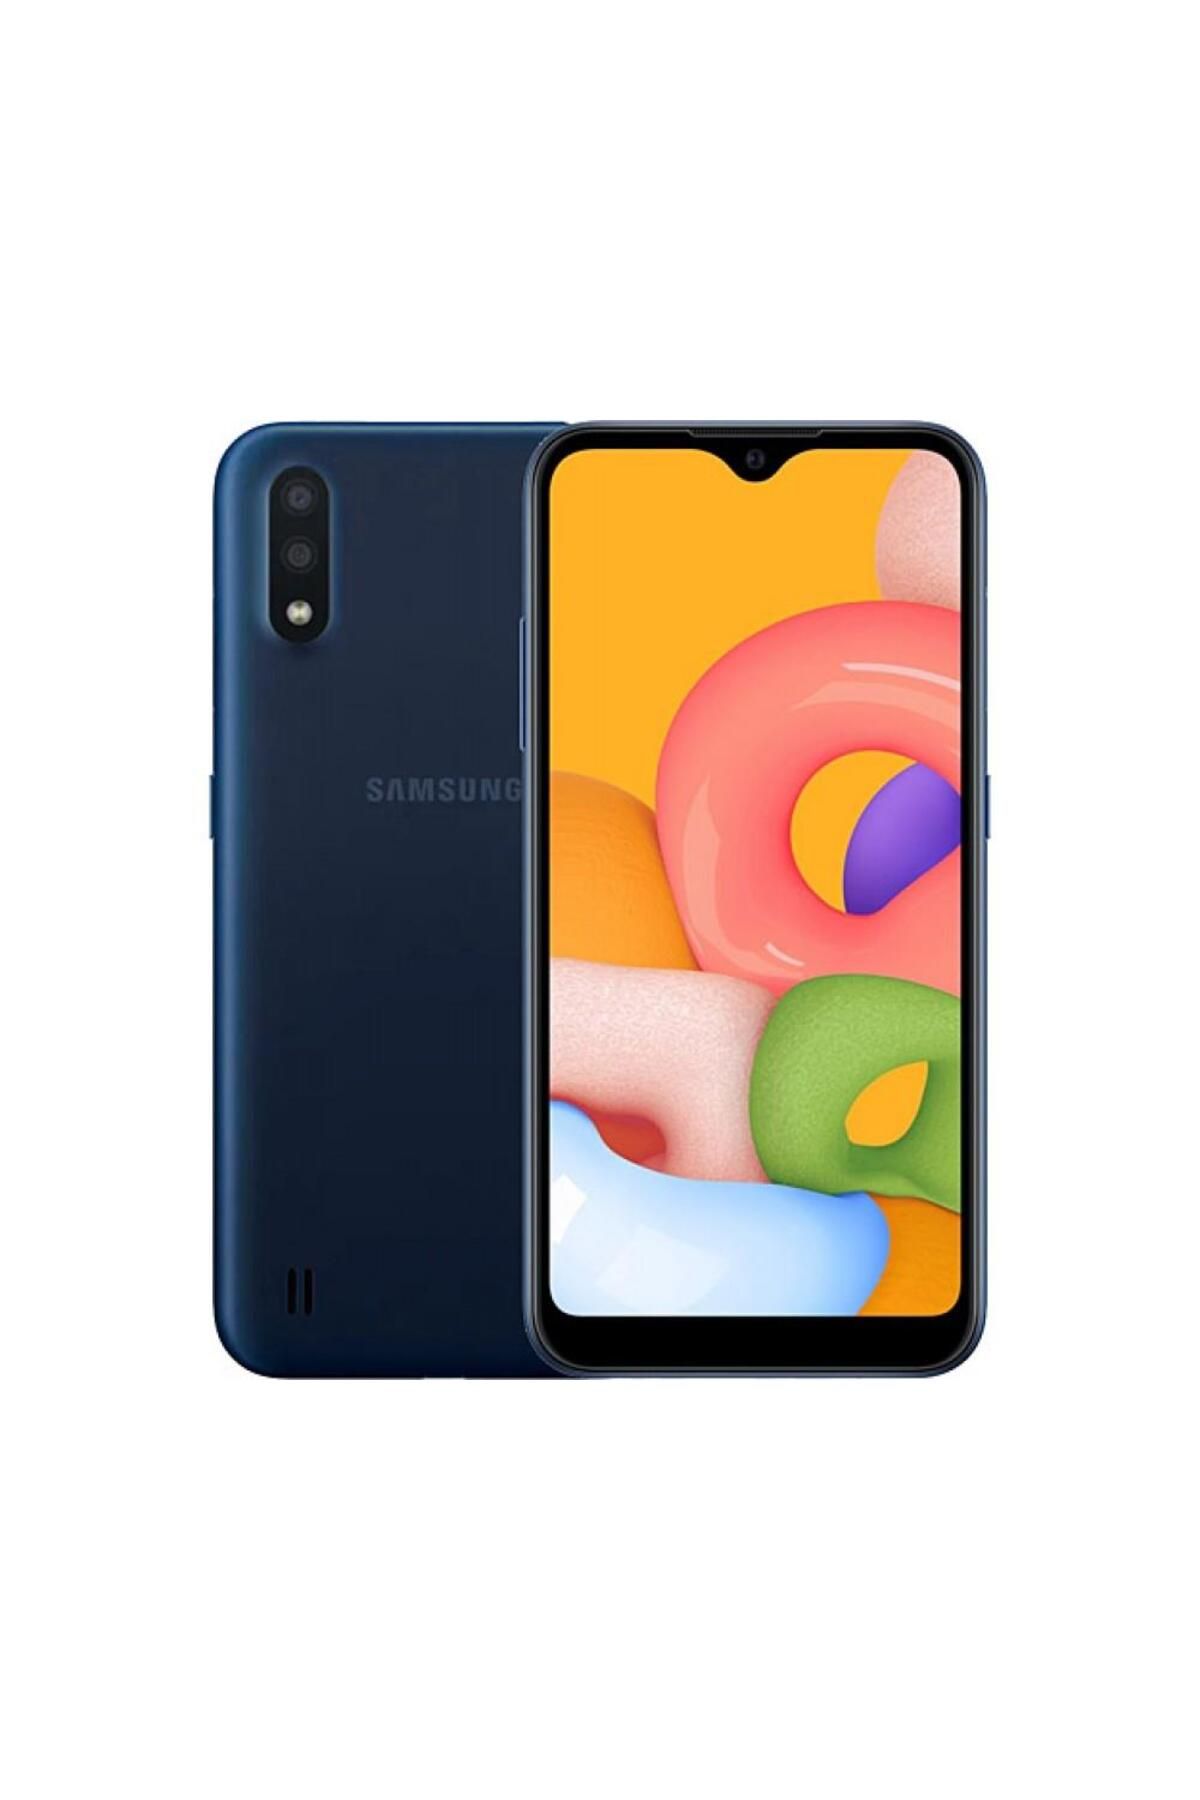 Samsung Yenilenmiş Samsung Galaxy A01 16 GB Mavi Cep Telefonu B Kalite